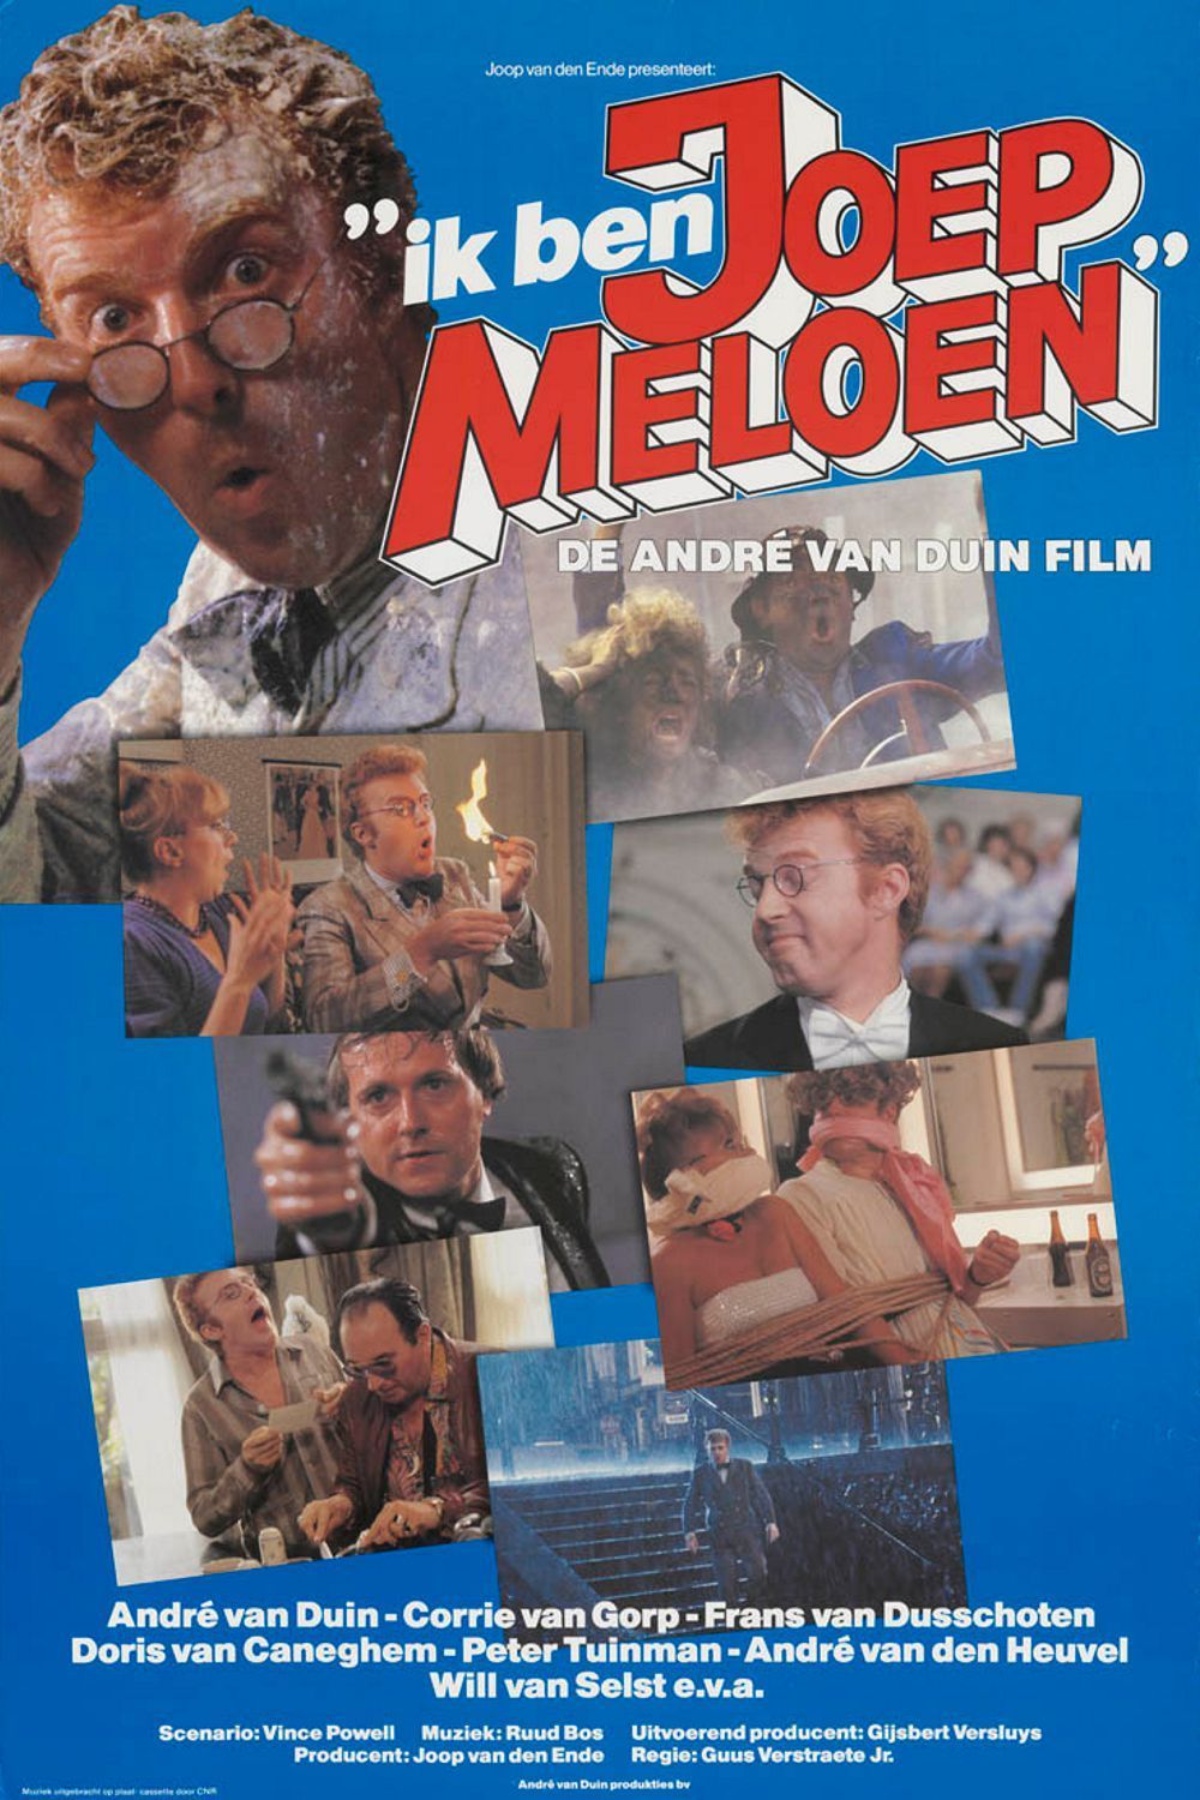 Ik Ben Joep Meloen Filmposter gesigneerd door André van Duin | Filmposter, Film, Duin